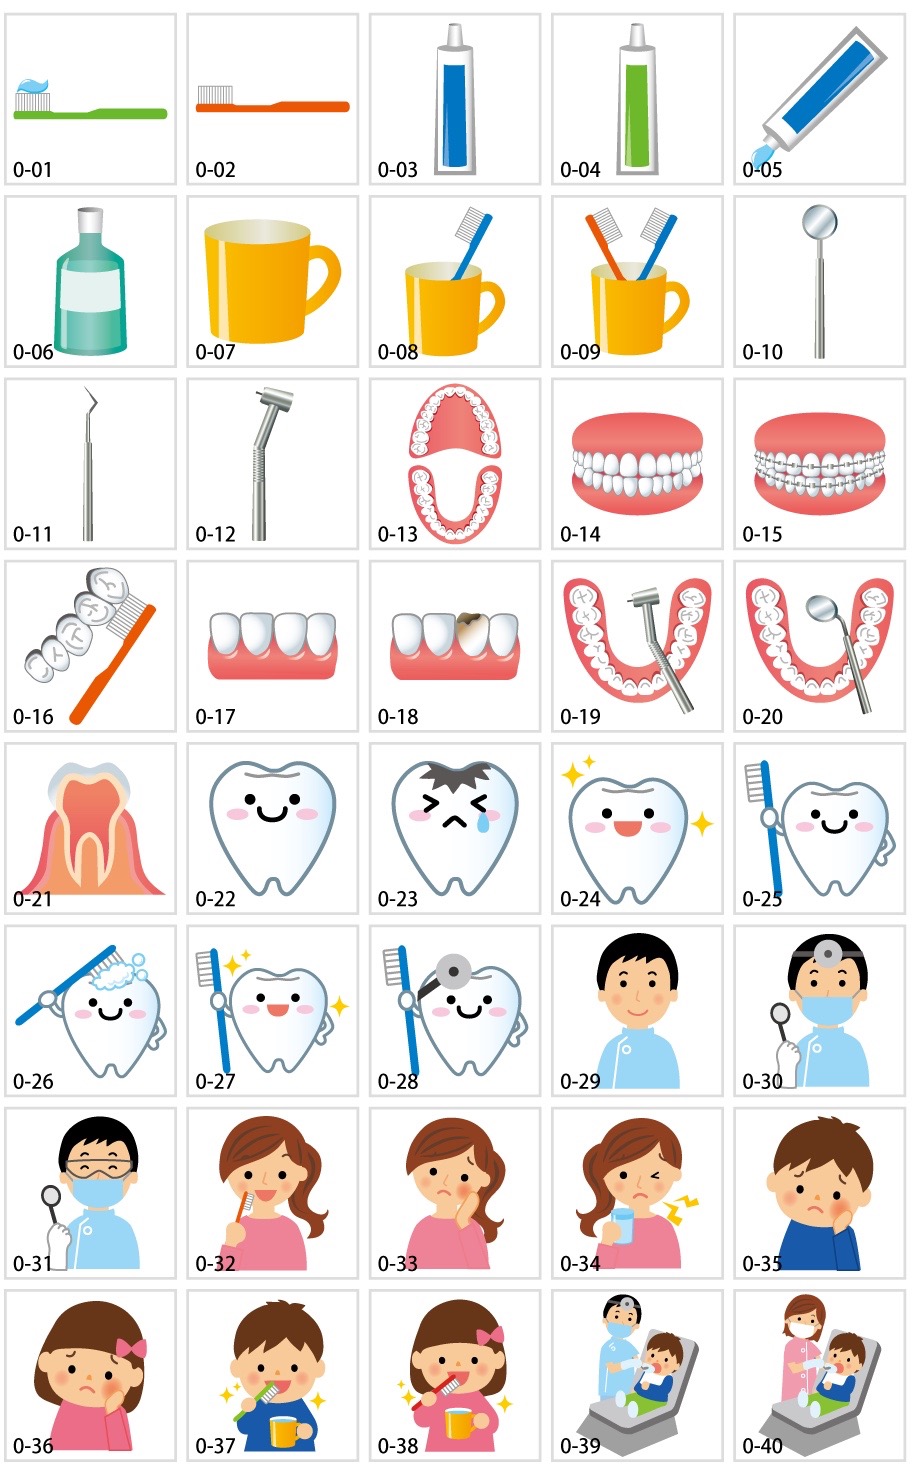 歯科関係のイラスト素材